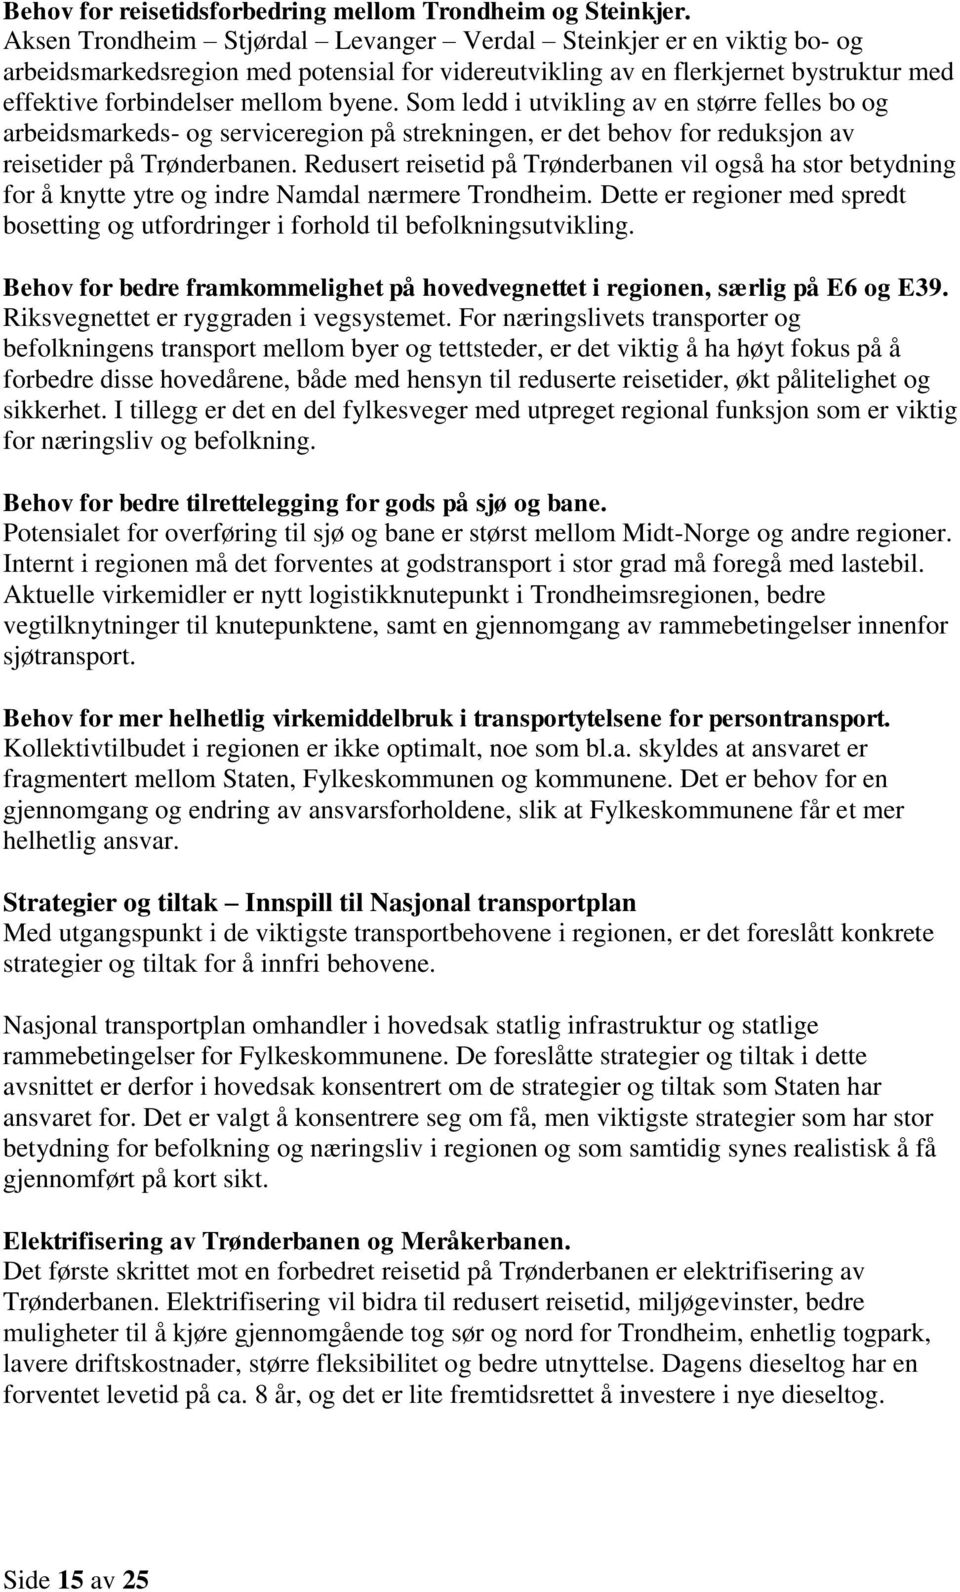 Som ledd i utvikling av en større felles bo og arbeidsmarkeds- og serviceregion på strekningen, er det behov for reduksjon av reisetider på Trønderbanen.